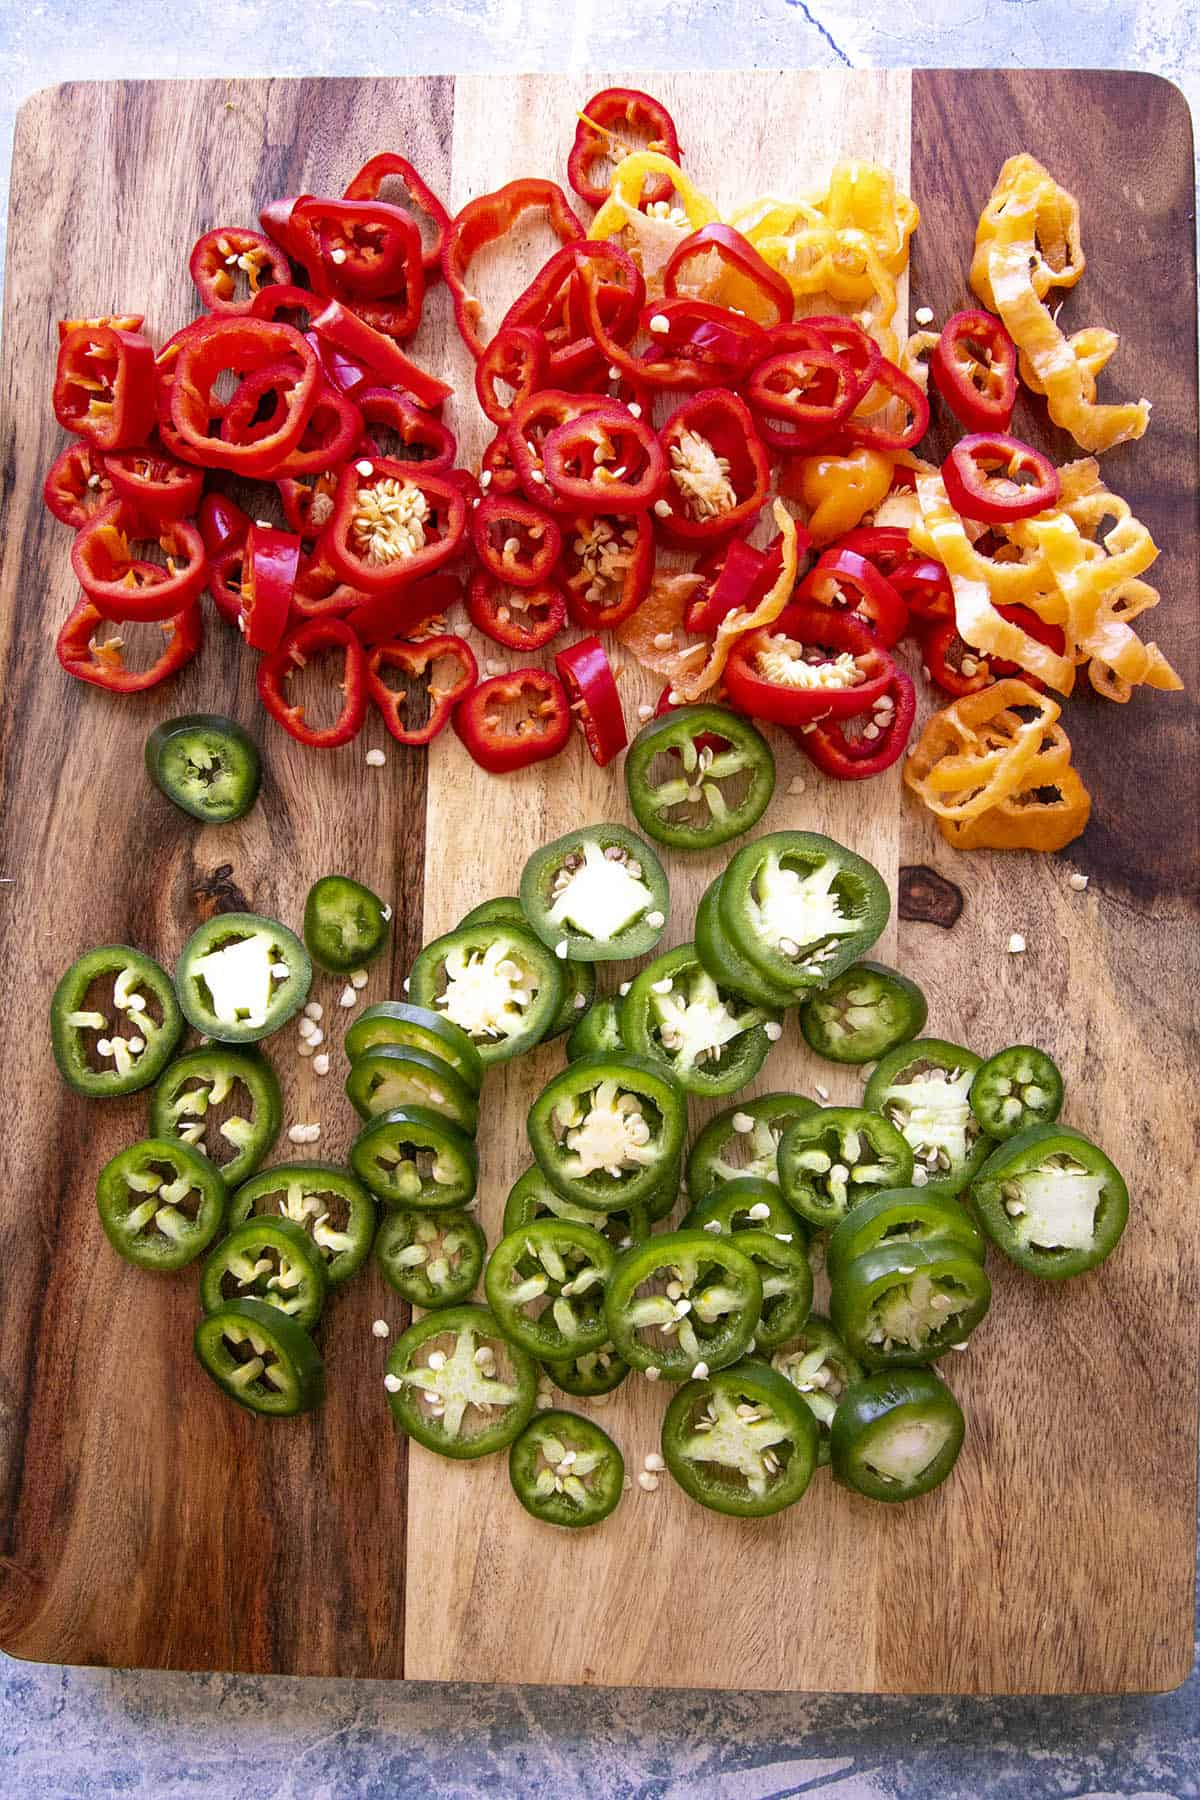 Sliced peppers for pickling